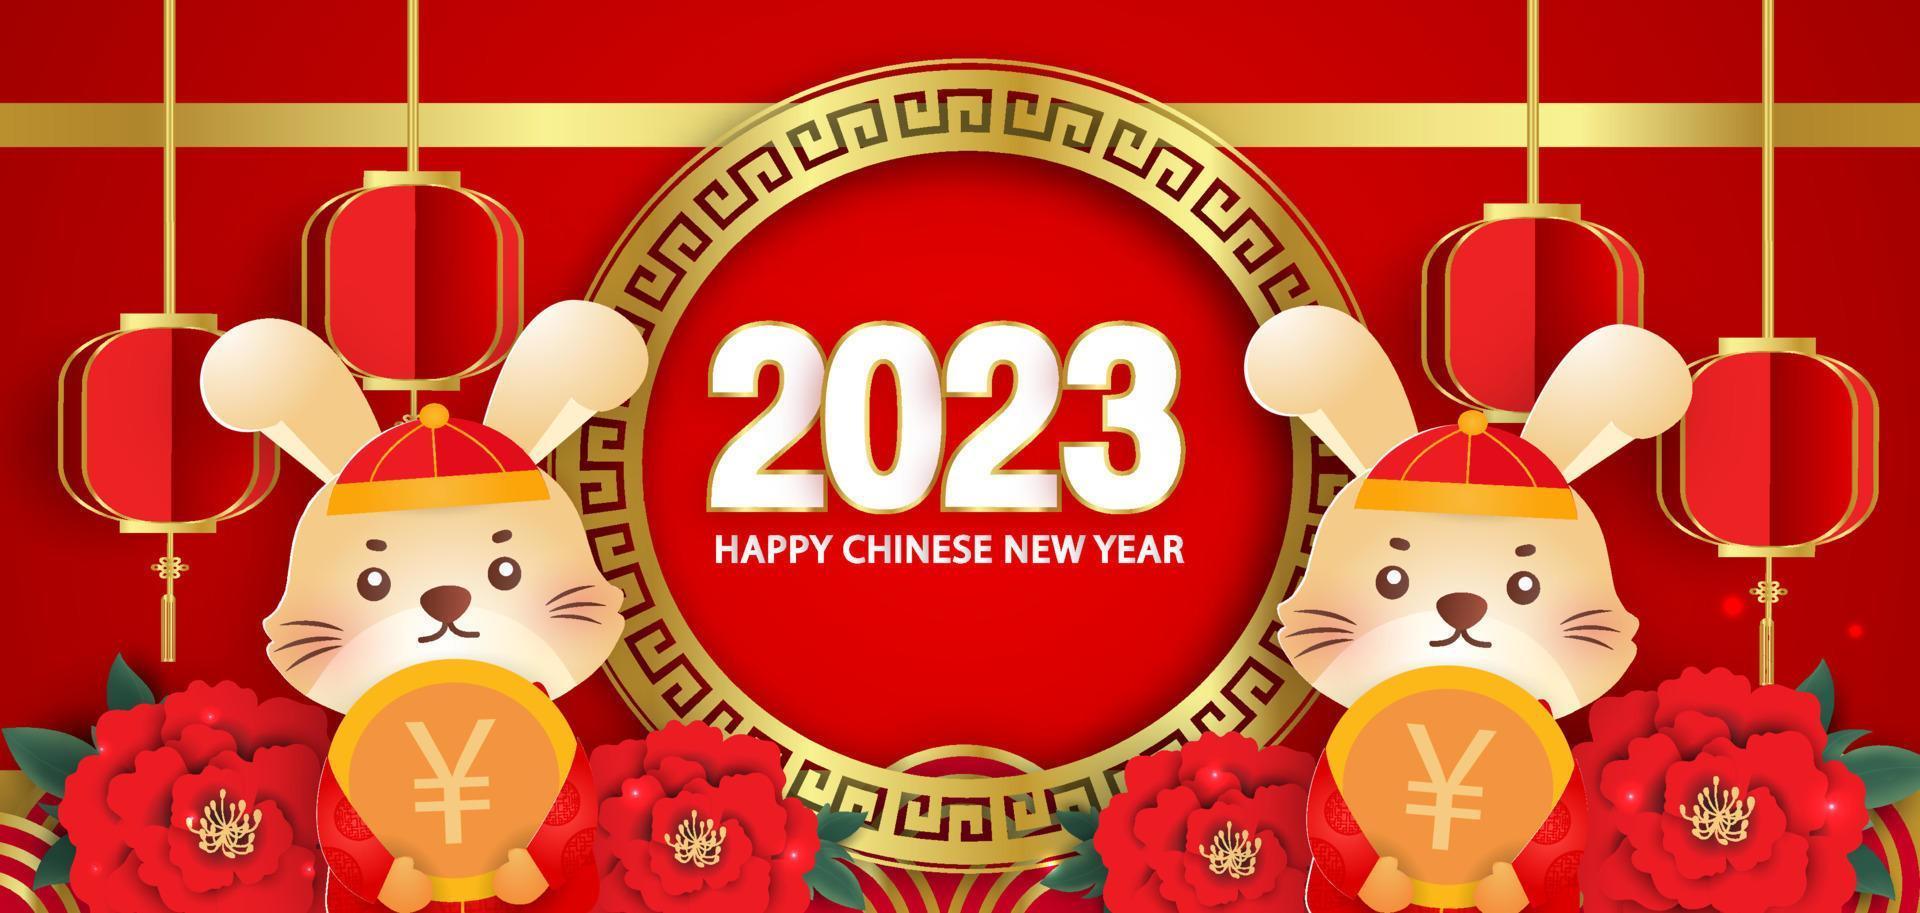 capodanno cinese 2023 anno del banner del coniglio in stile taglio carta. vettore